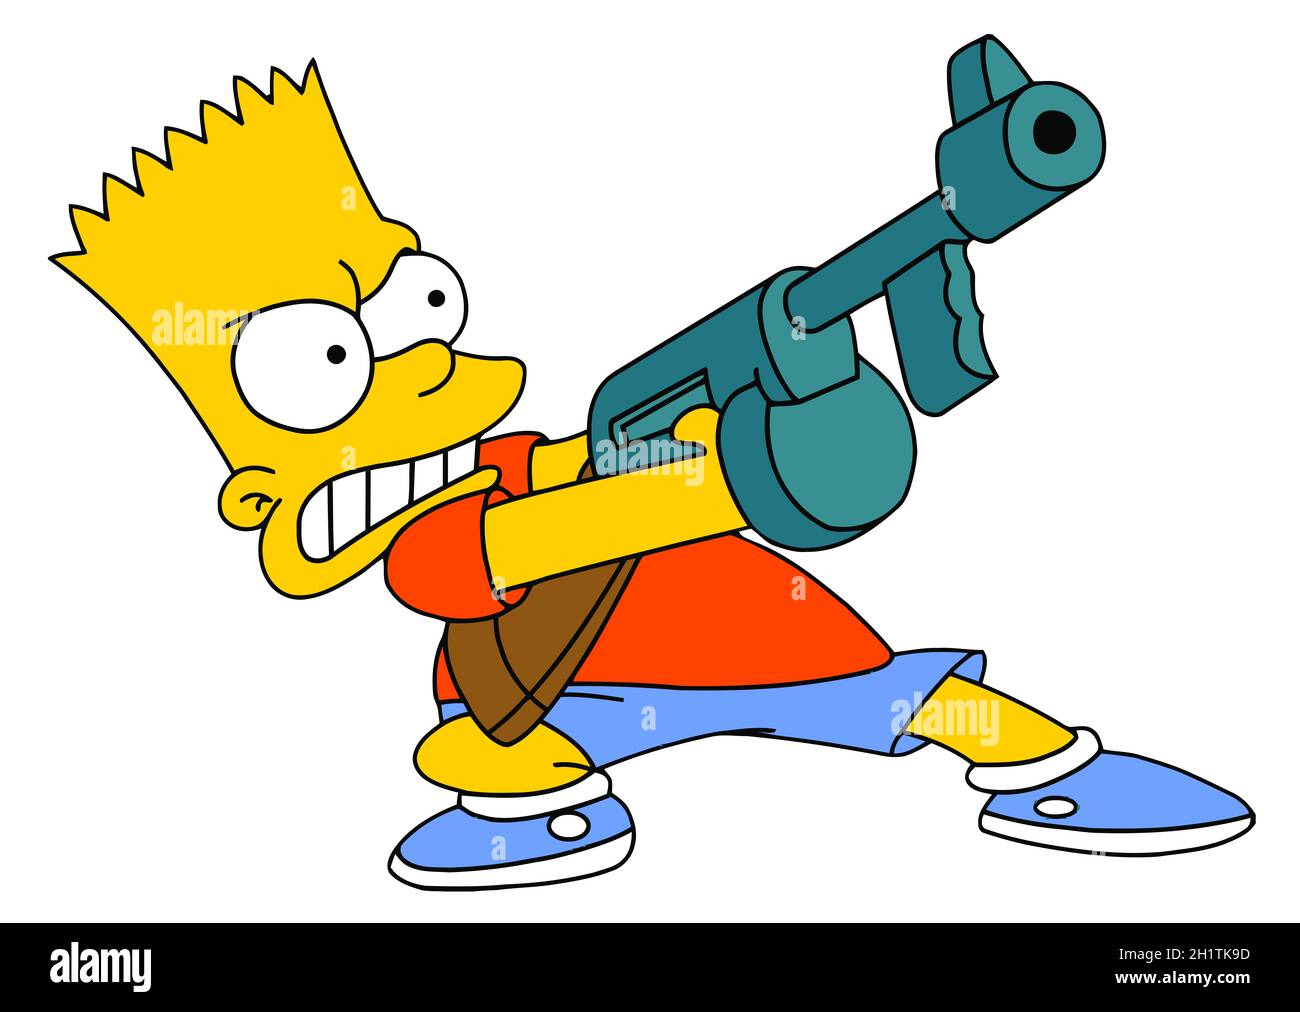 Bart dessin animé de l'illustration des Simpsons Banque D'Images